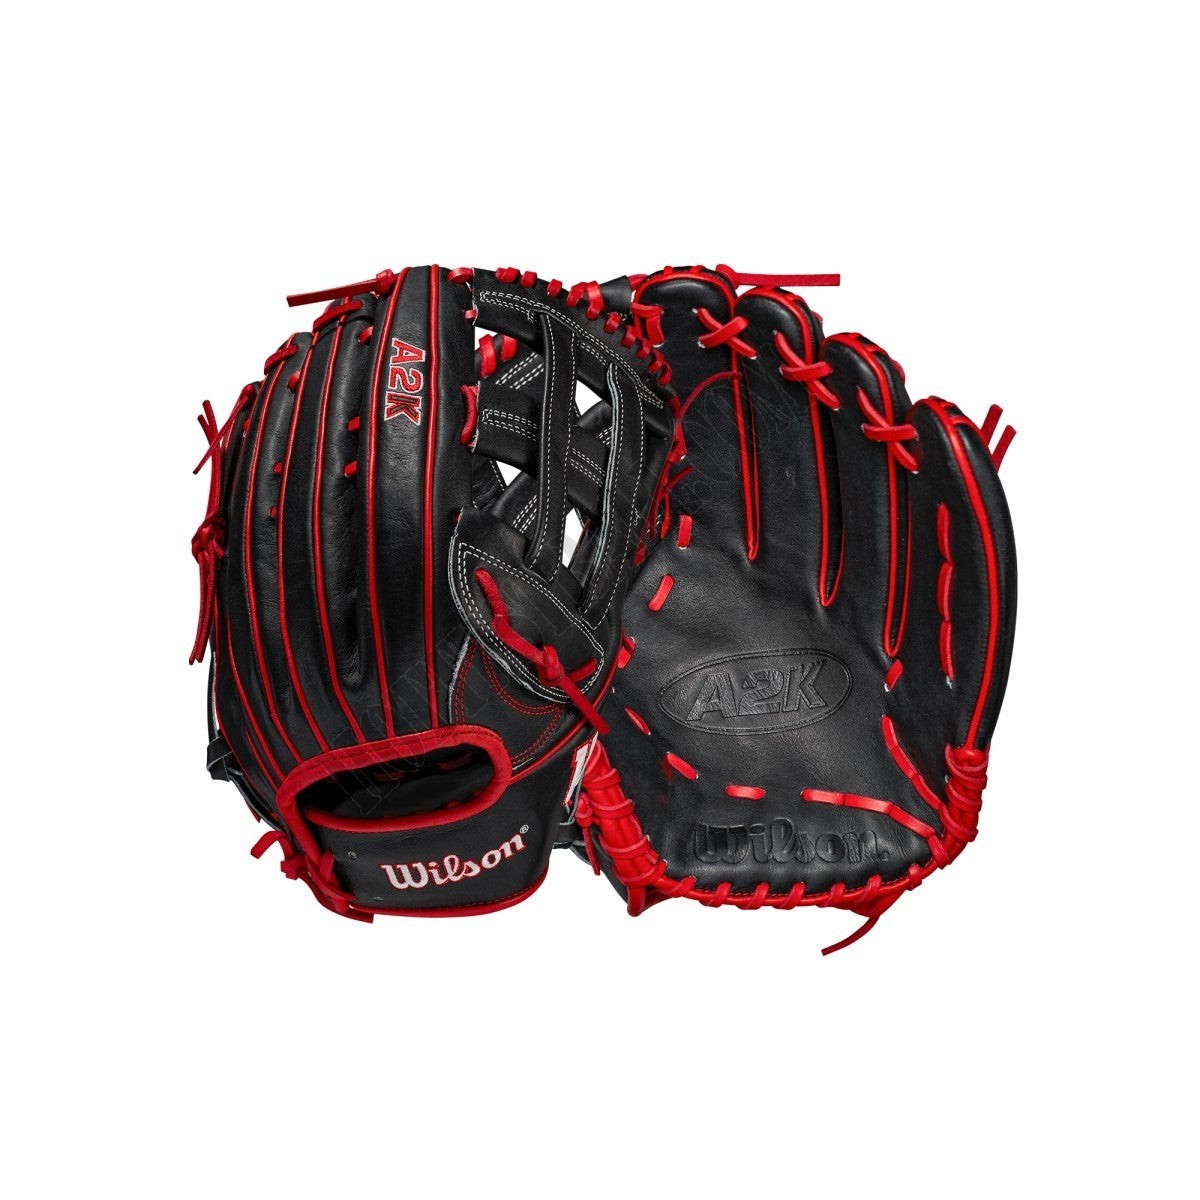 2021 A2K JS22 GM 12.75" Outfield Baseball Glove ● Wilson Promotions - 2021 A2K JS22 GM 12.75" Outfield Baseball Glove ● Wilson Promotions